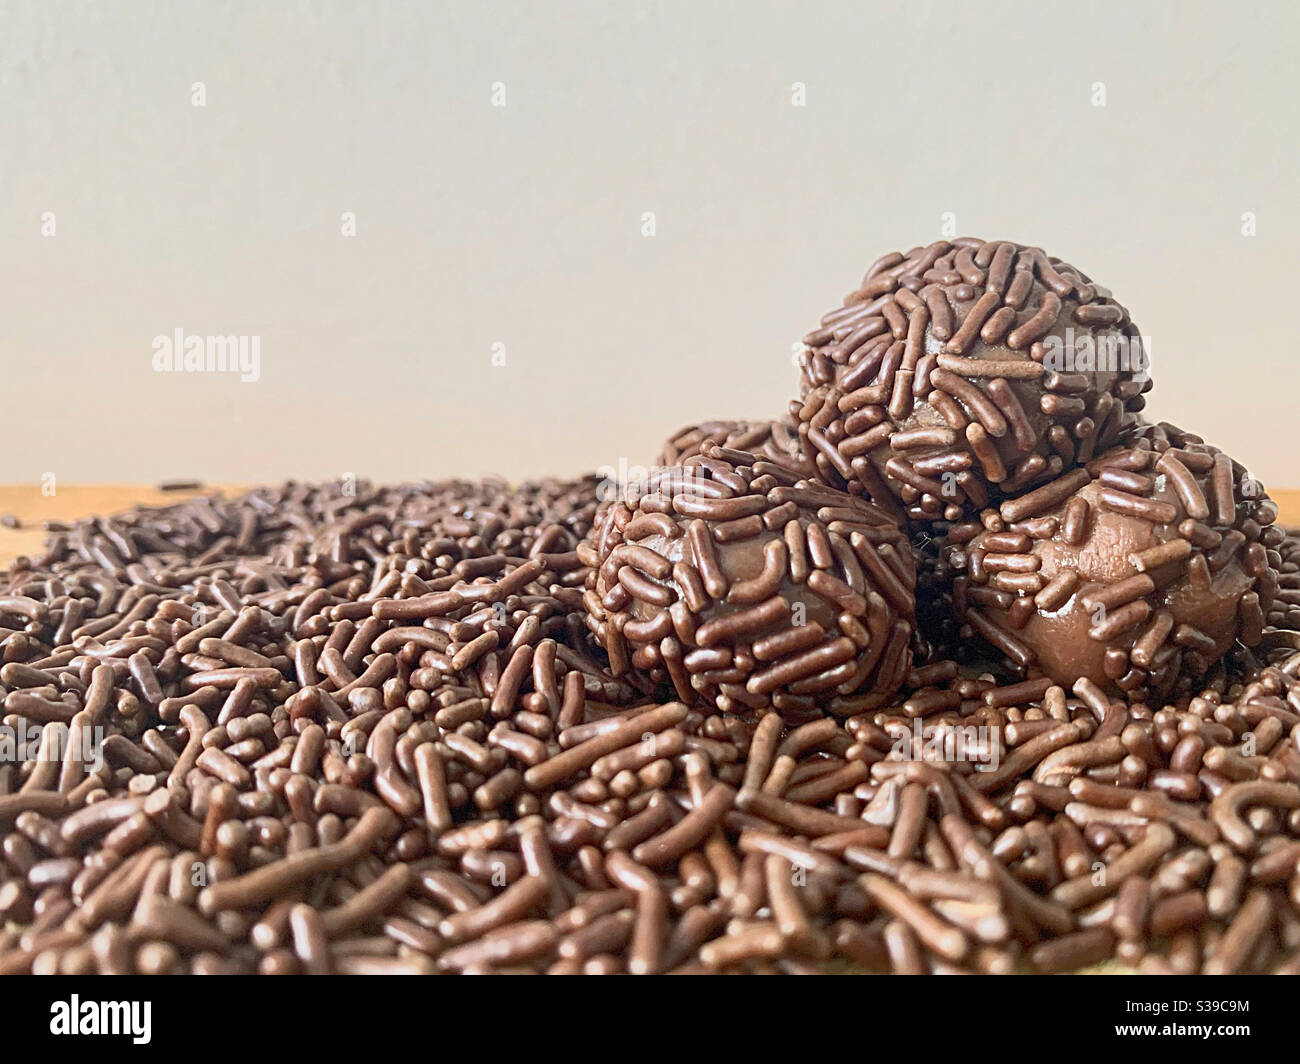 Brigadeiros: Brazilian chocolate truffles with chocolate sprinkles Stock Photo